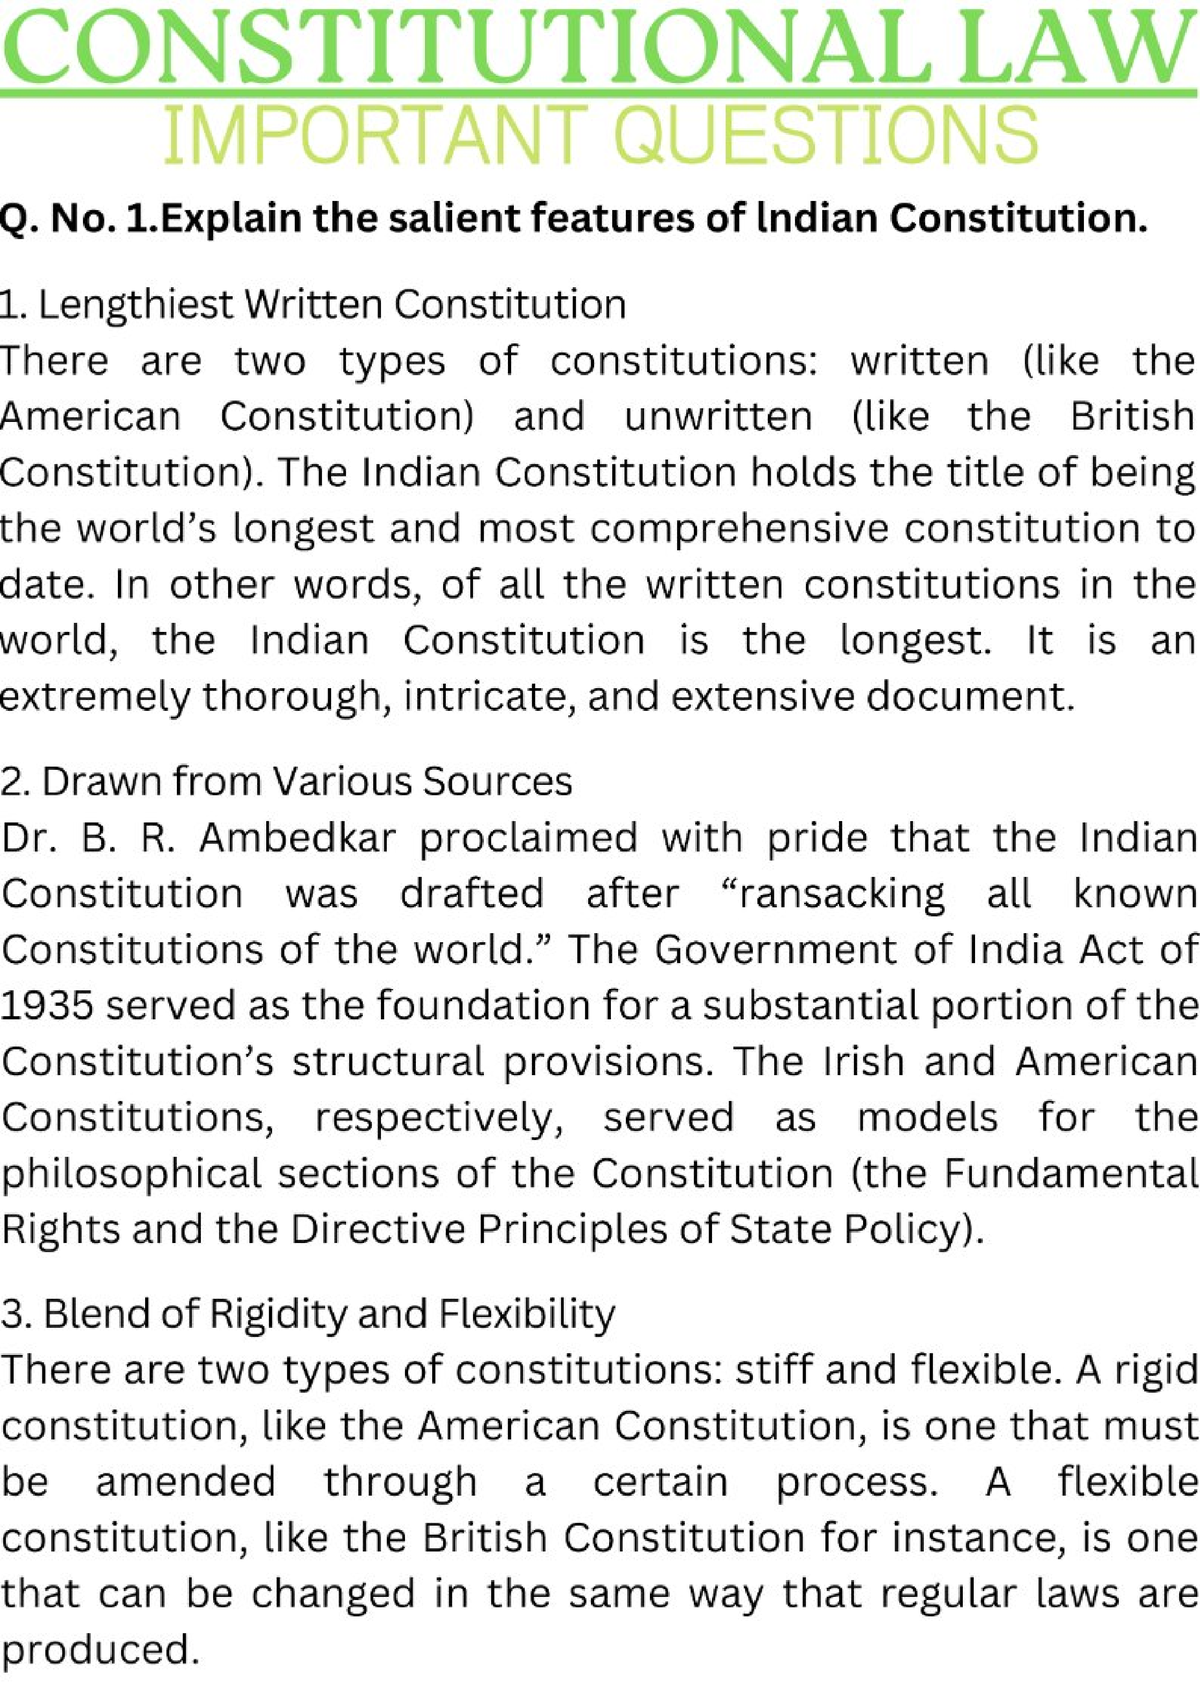 dissertation topics constitutional law